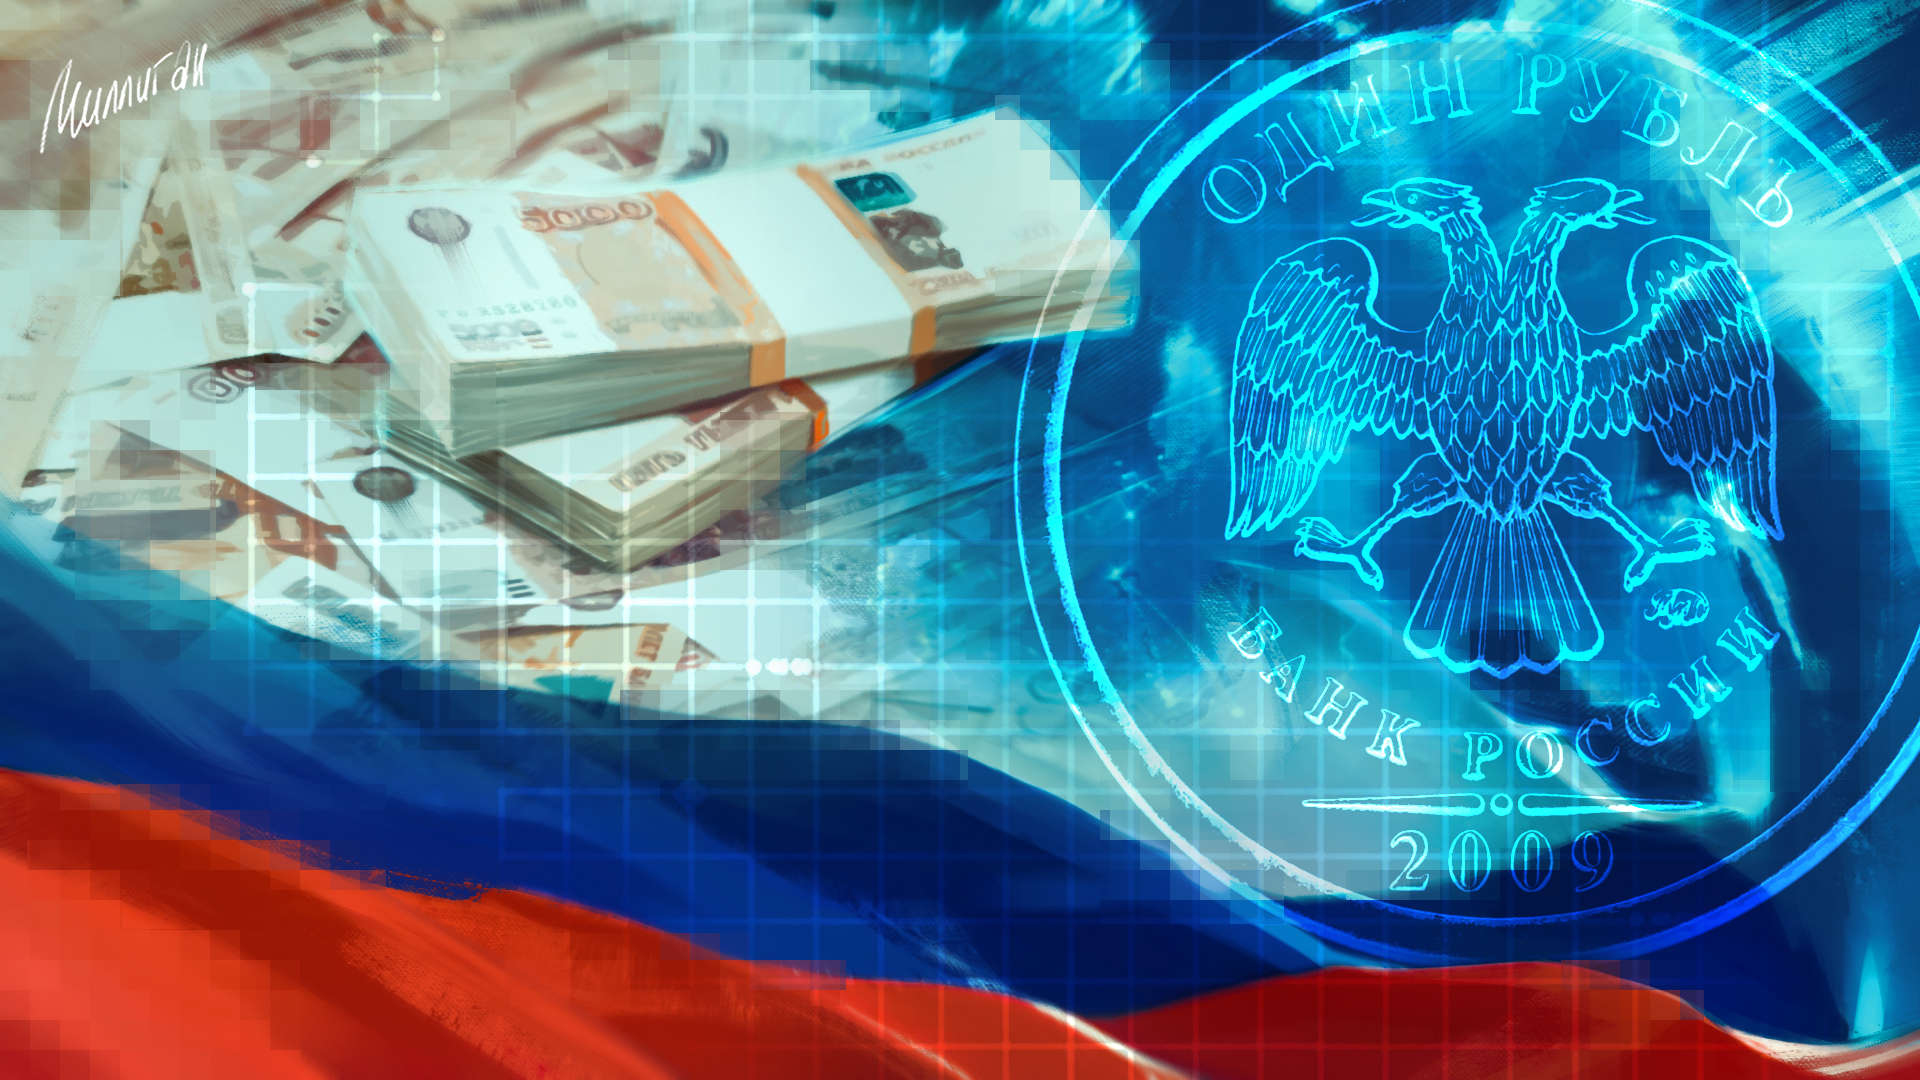 Финансово экономическая политика россии